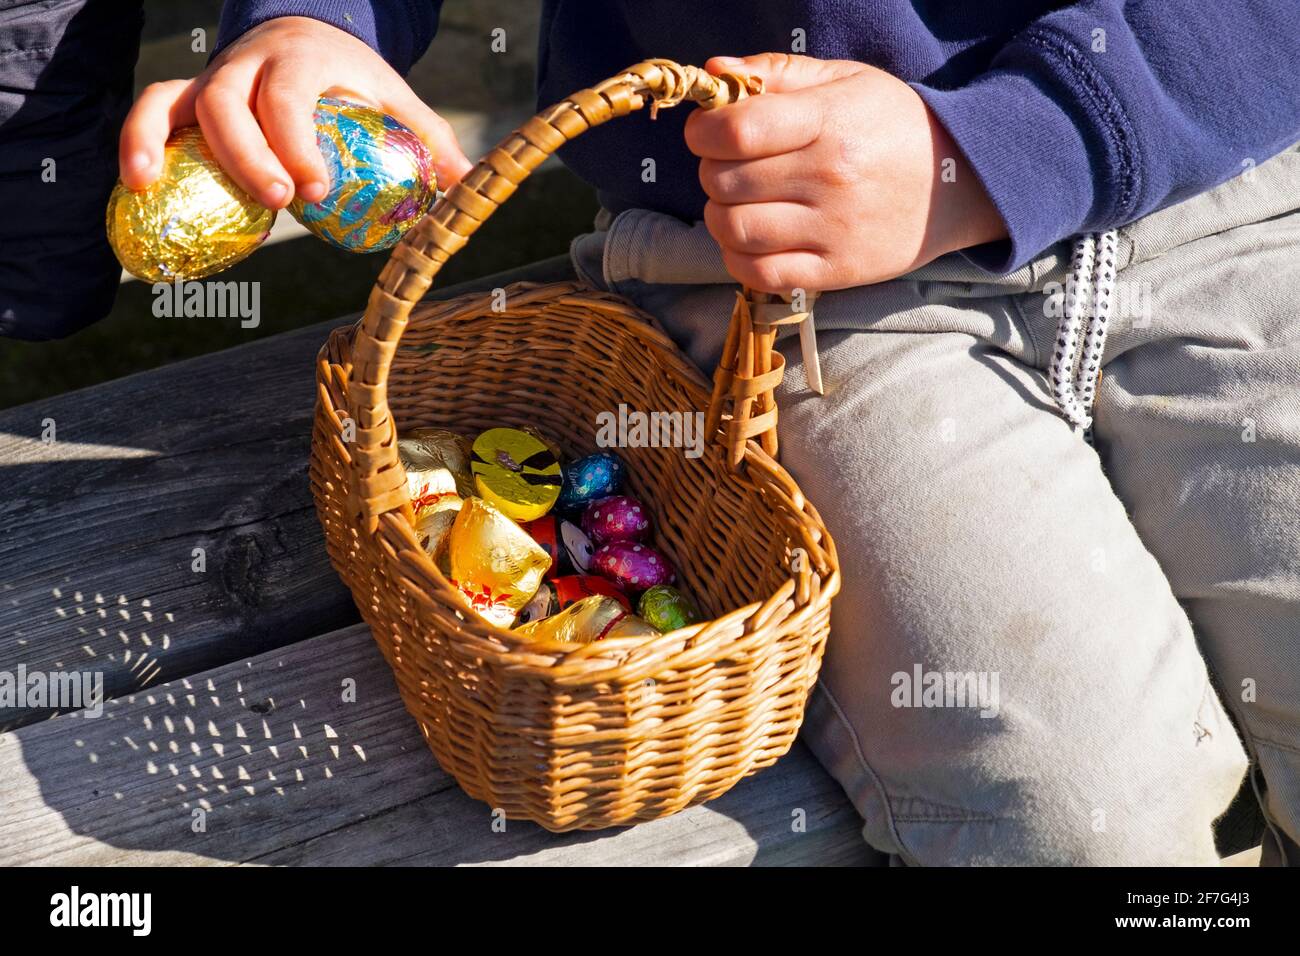 Gros plan de l'enfant assis sur le banc tenant le chocolat de mise Œufs dans le panier de Pâques avec de petits œufs après la collecte Chasse aux œufs, Royaume-Uni KATHY DEWITT Banque D'Images